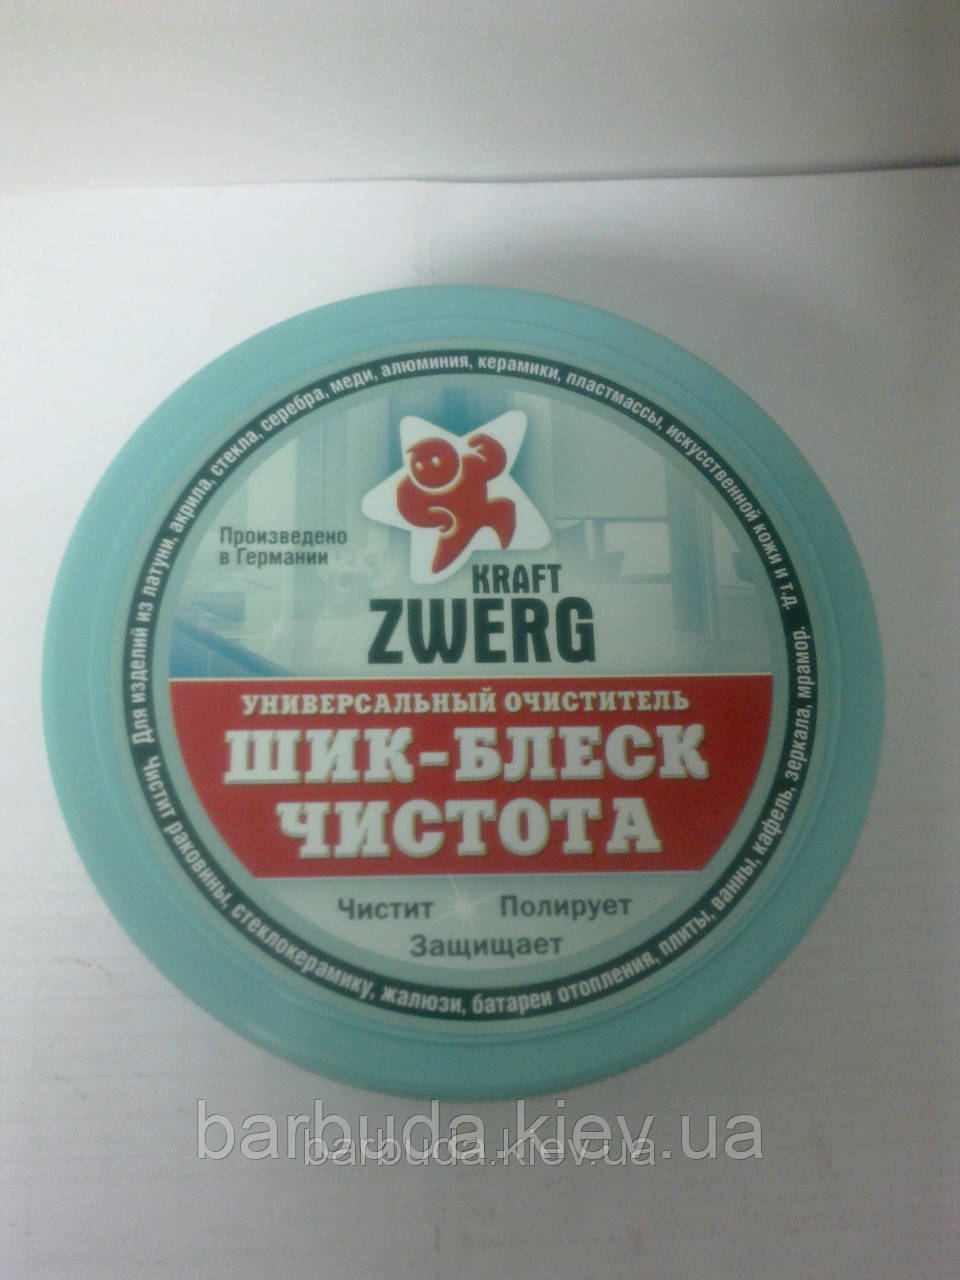 Універсальна очисна паста «ШИК-БЛЕСК-ЧИСТОТА» "Kraft Zwerg"